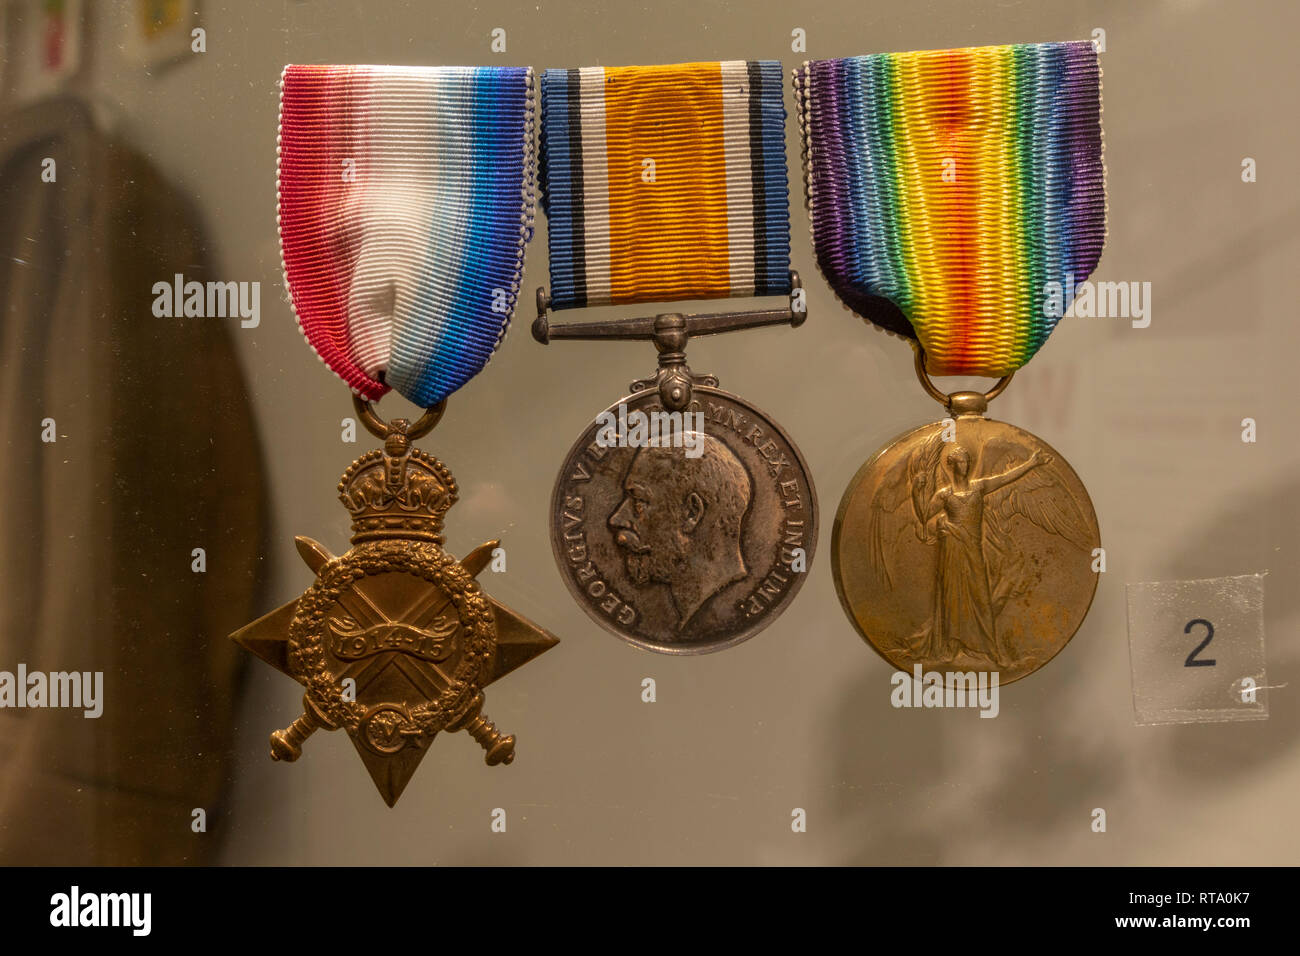 1914-15 étoiles, Médaille de guerre britannique, Médaille de la Victoire (aussi appelé l'Inter-Allied Médaille de la Victoire) sur l'affichage, York Castle Museum, York, Yorkshire, UK. Banque D'Images